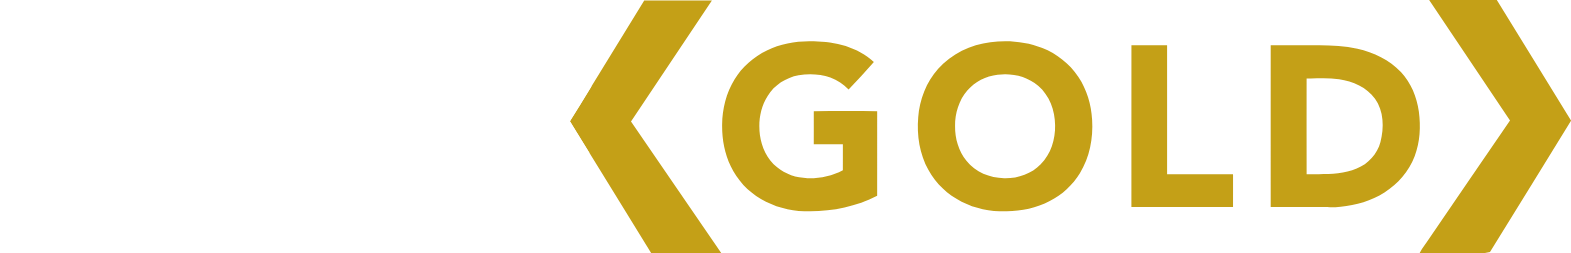 Tanzanian Gold Corporation logo grand pour les fonds sombres (PNG transparent)